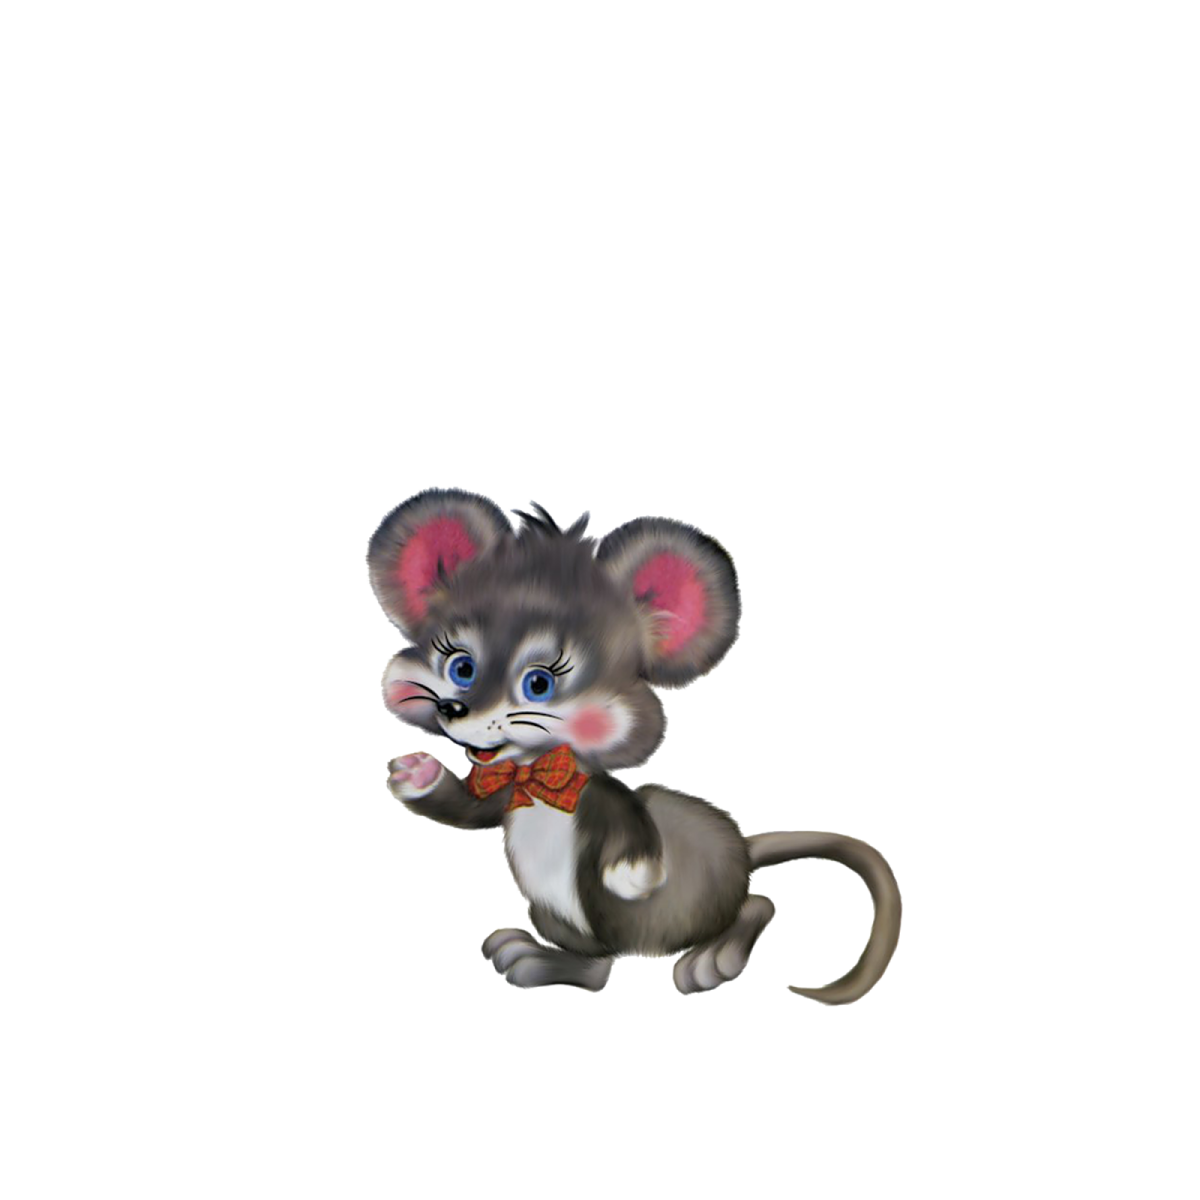 Картинка мышонка на прозрачном фоне. Мышка из Репки. Мышка из сказки. Сказочная мышка на прозрачном фоне. Сказочные герои мышка.